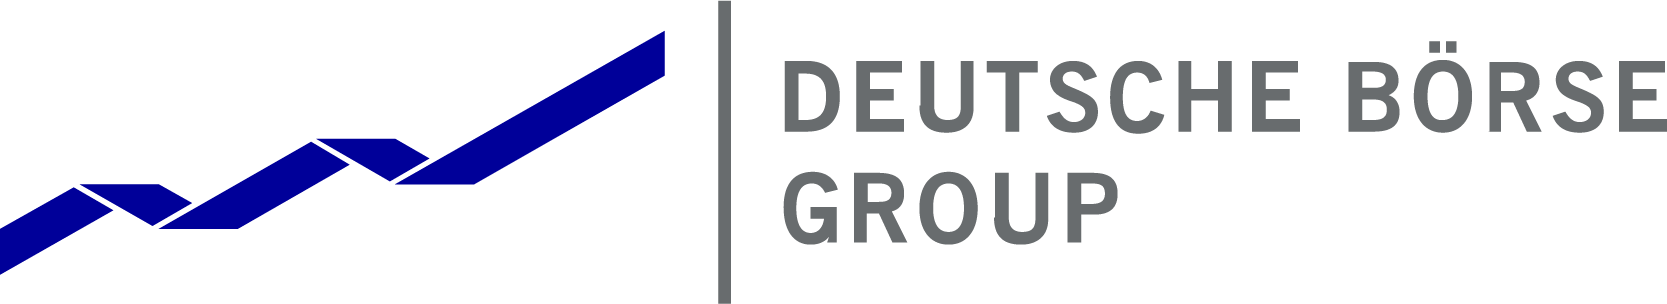 Deutsche Böerse Group logo